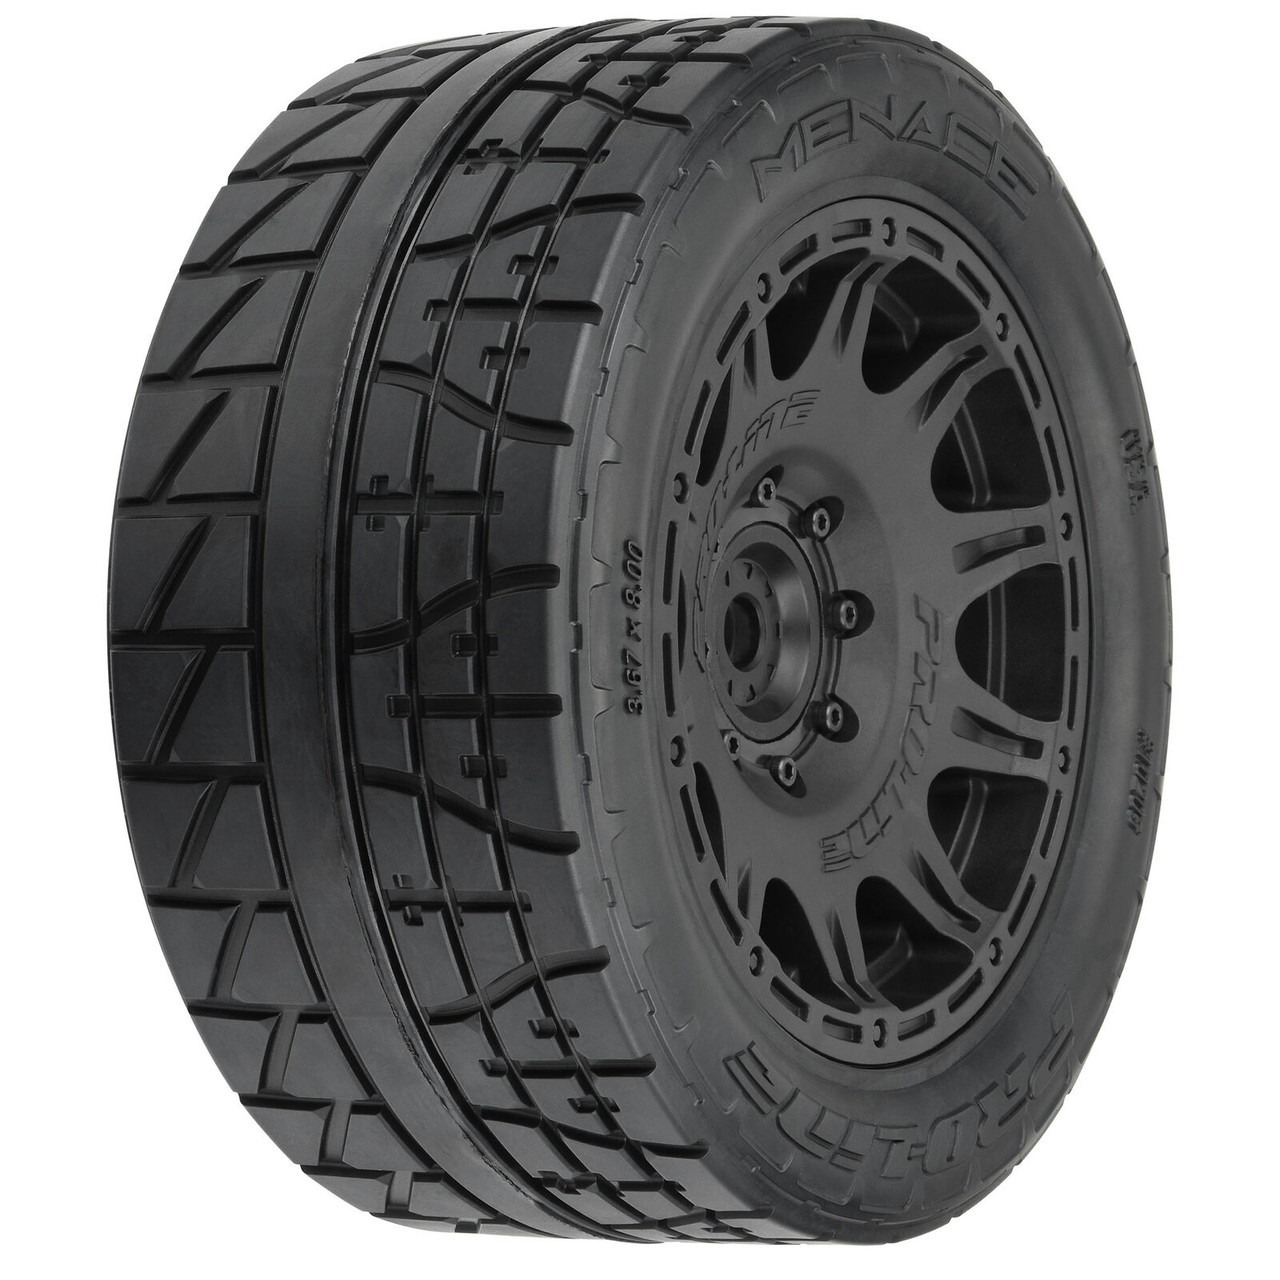 Proline 1/6 Menace HP BELTED F/R 5.7” Tires MTD 24mm Black Raid 8x48 Hex (2)